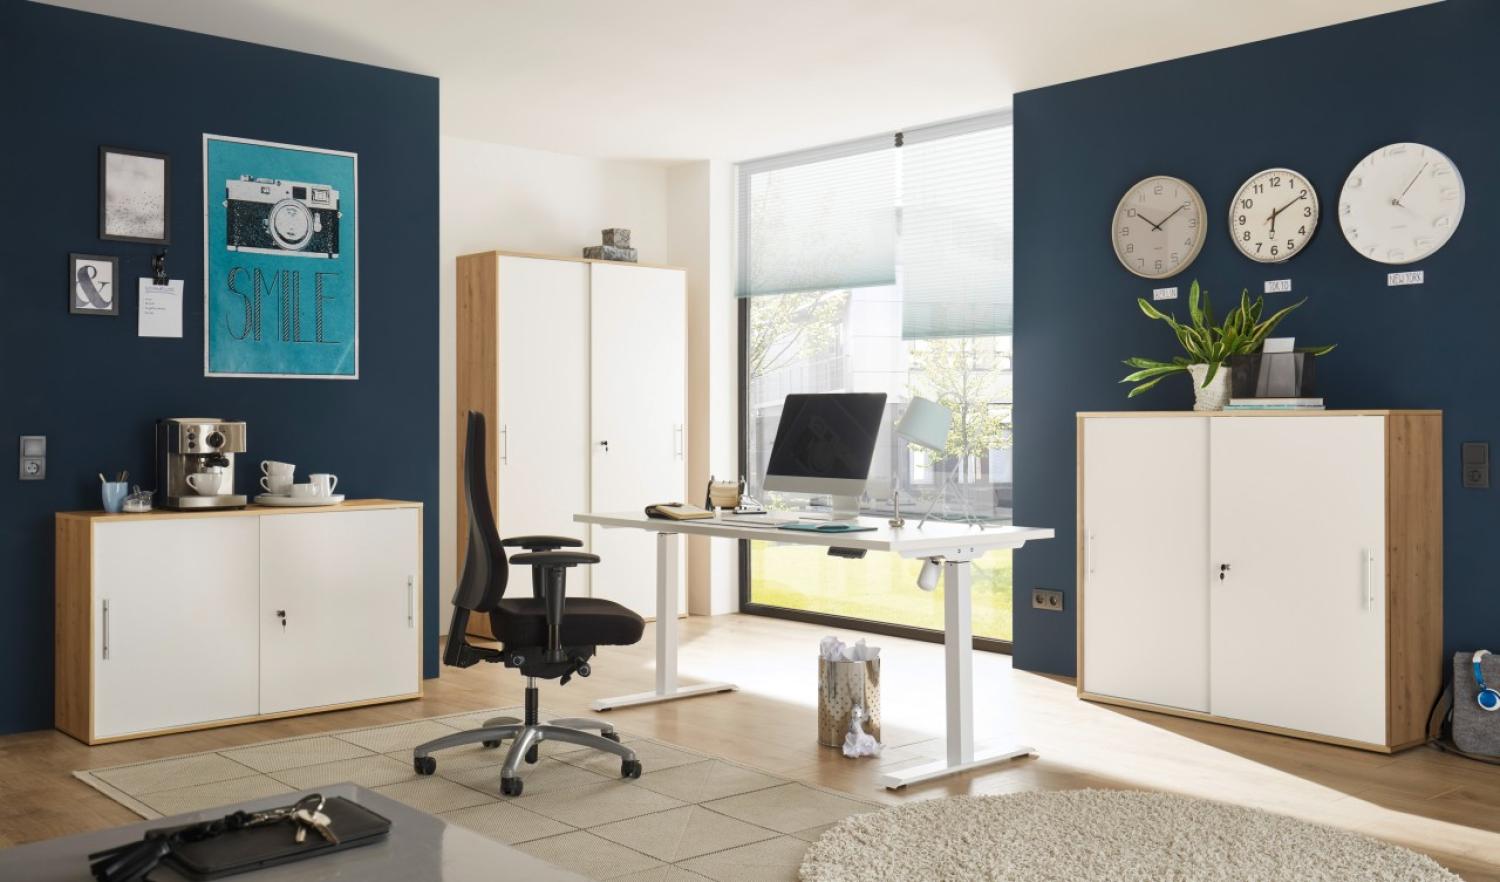 Büromöbel Shove Pronto komplett Set 4 teilig in Artisan und Weiß mit elektrisch höhenverstellbaren Schreibtisch und drei verschieden großen, abschließbaren Aktenschränken - MD111002 Bild 1